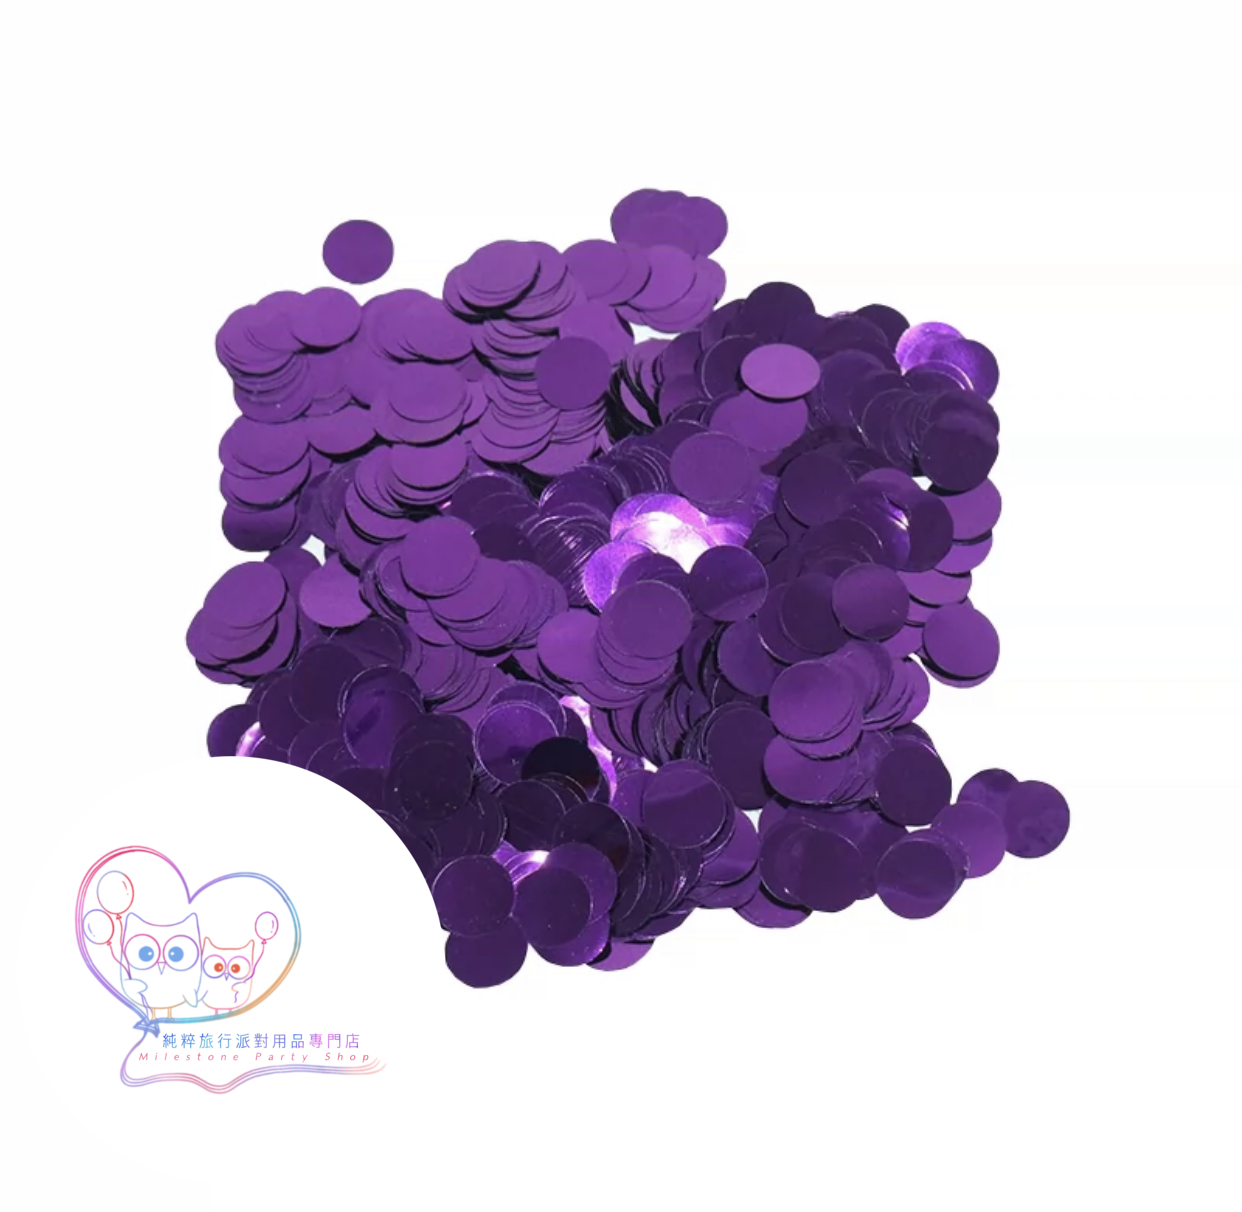 Confetti 紙屑 (紫片) 10g PEPO2-7